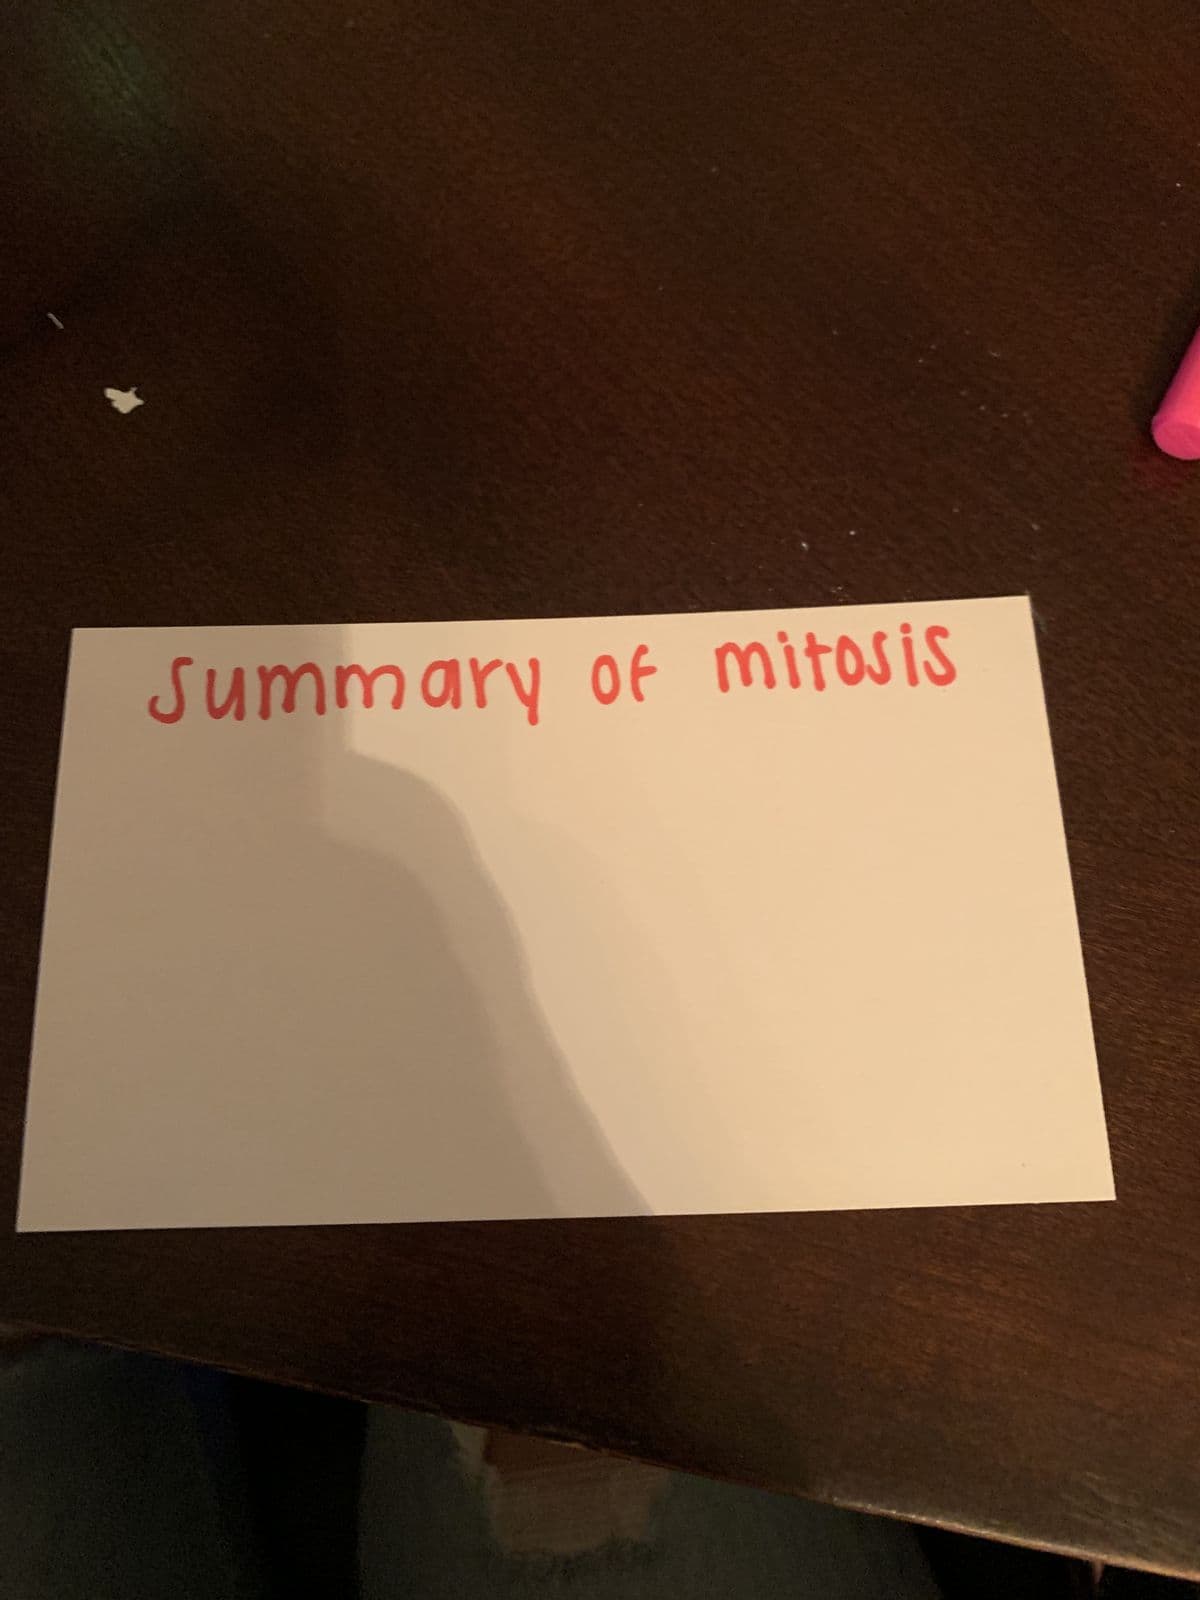 *
Summary of mitosis